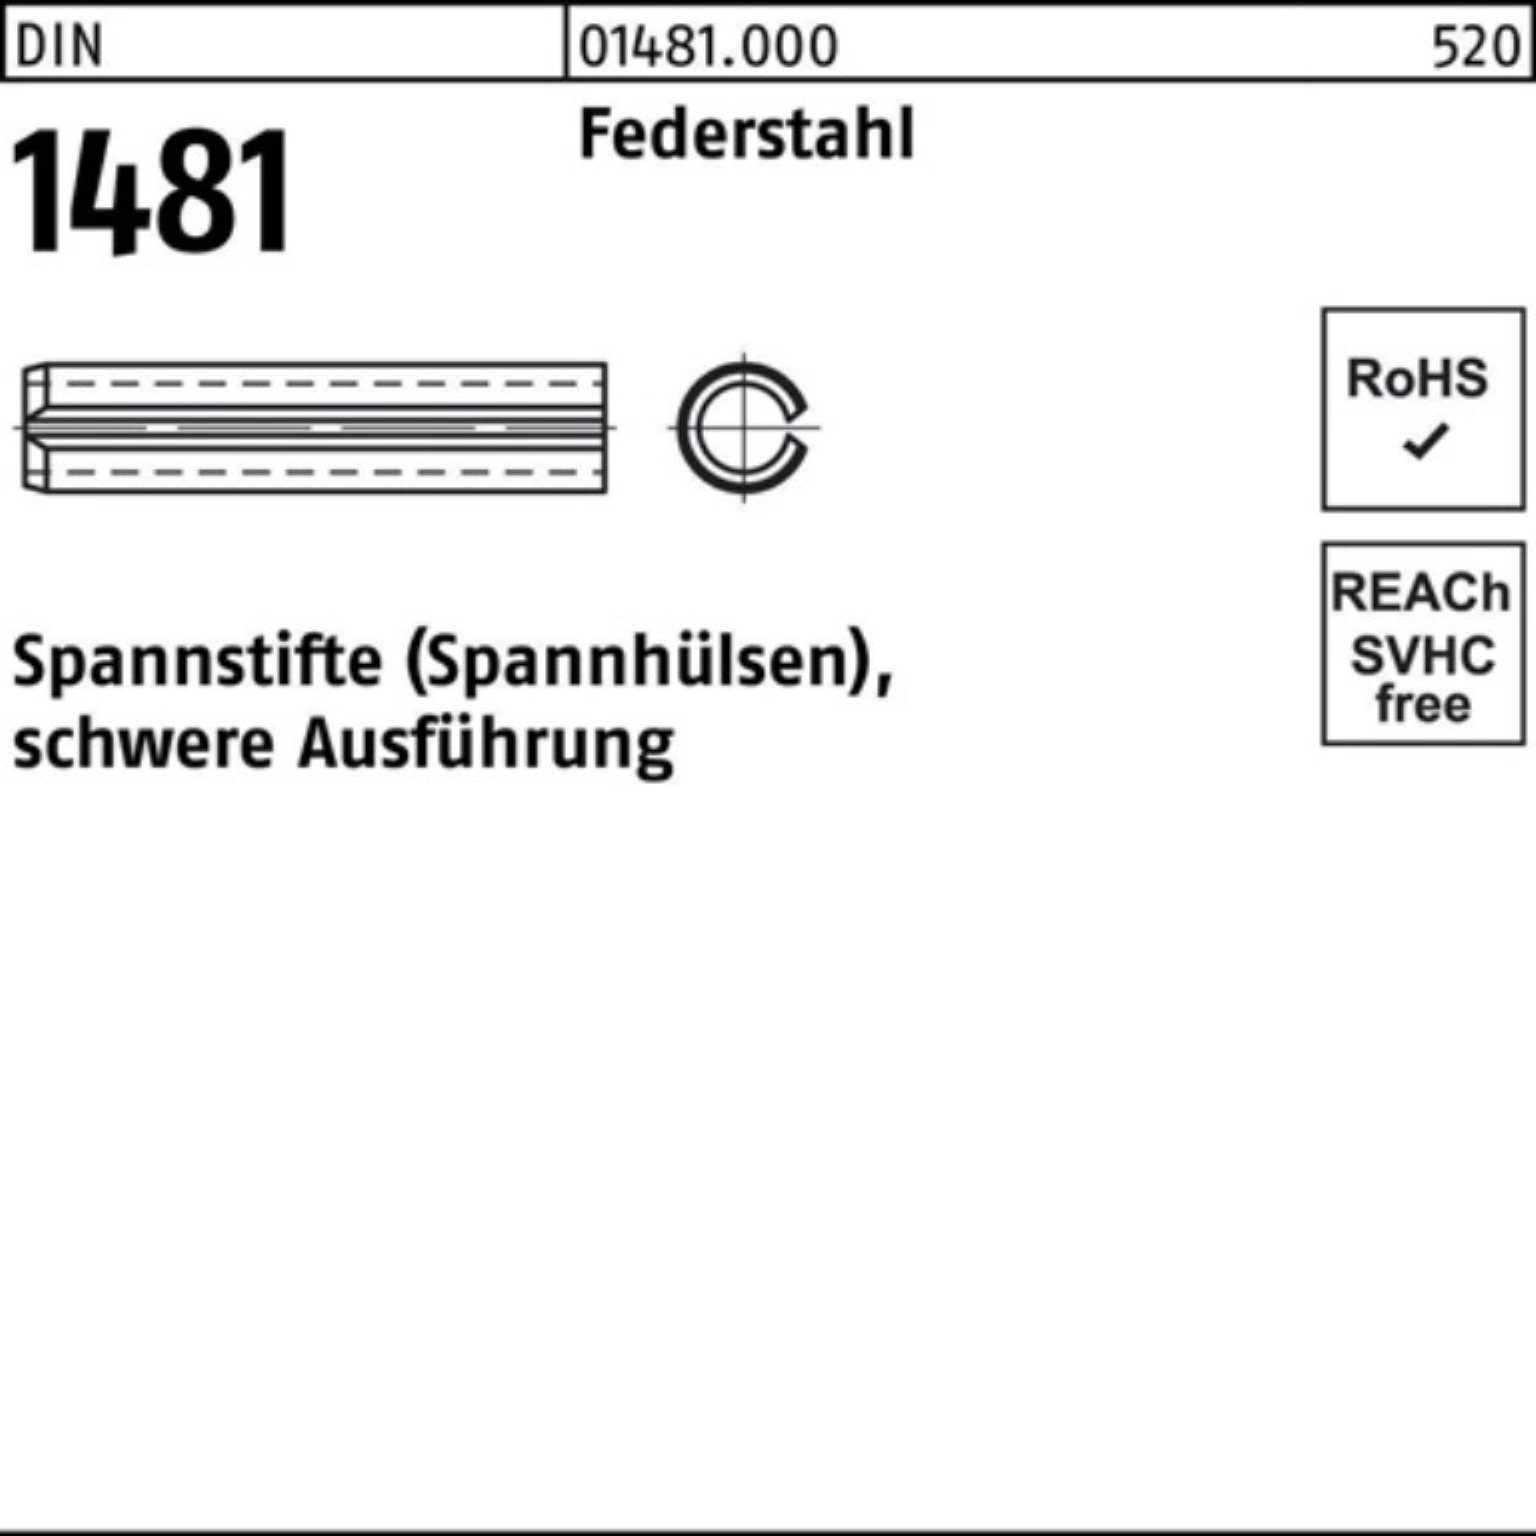 Reyher Spannstift 100er Pack Spannstift DIN 1481 14x 120 Federstahl schwere Ausführung